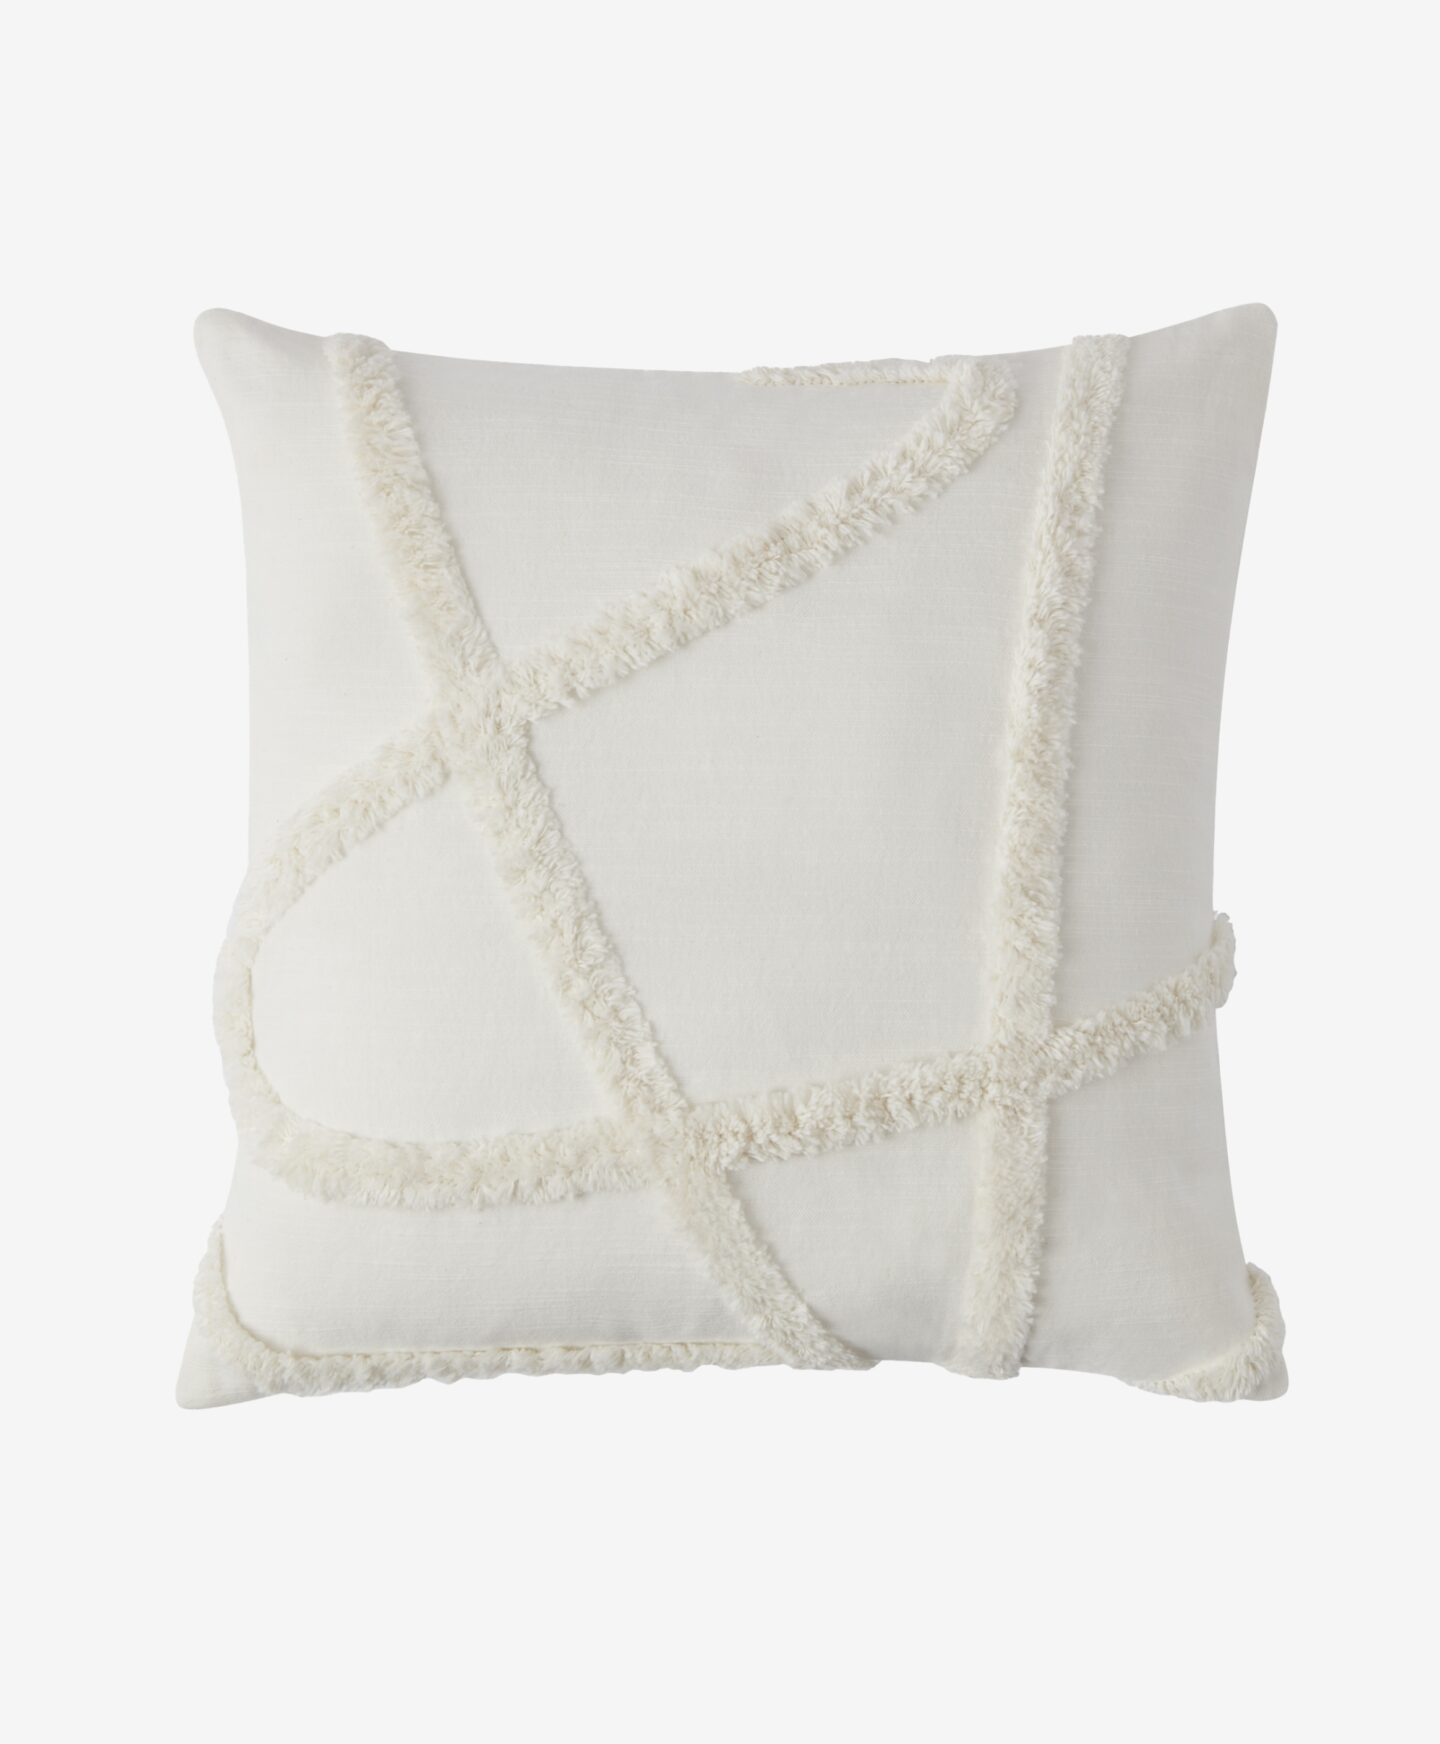 100% Baumwolle Weißer Kissenbezug mit geprägtem Muster, weiße Farbe, 45 x 45 cm